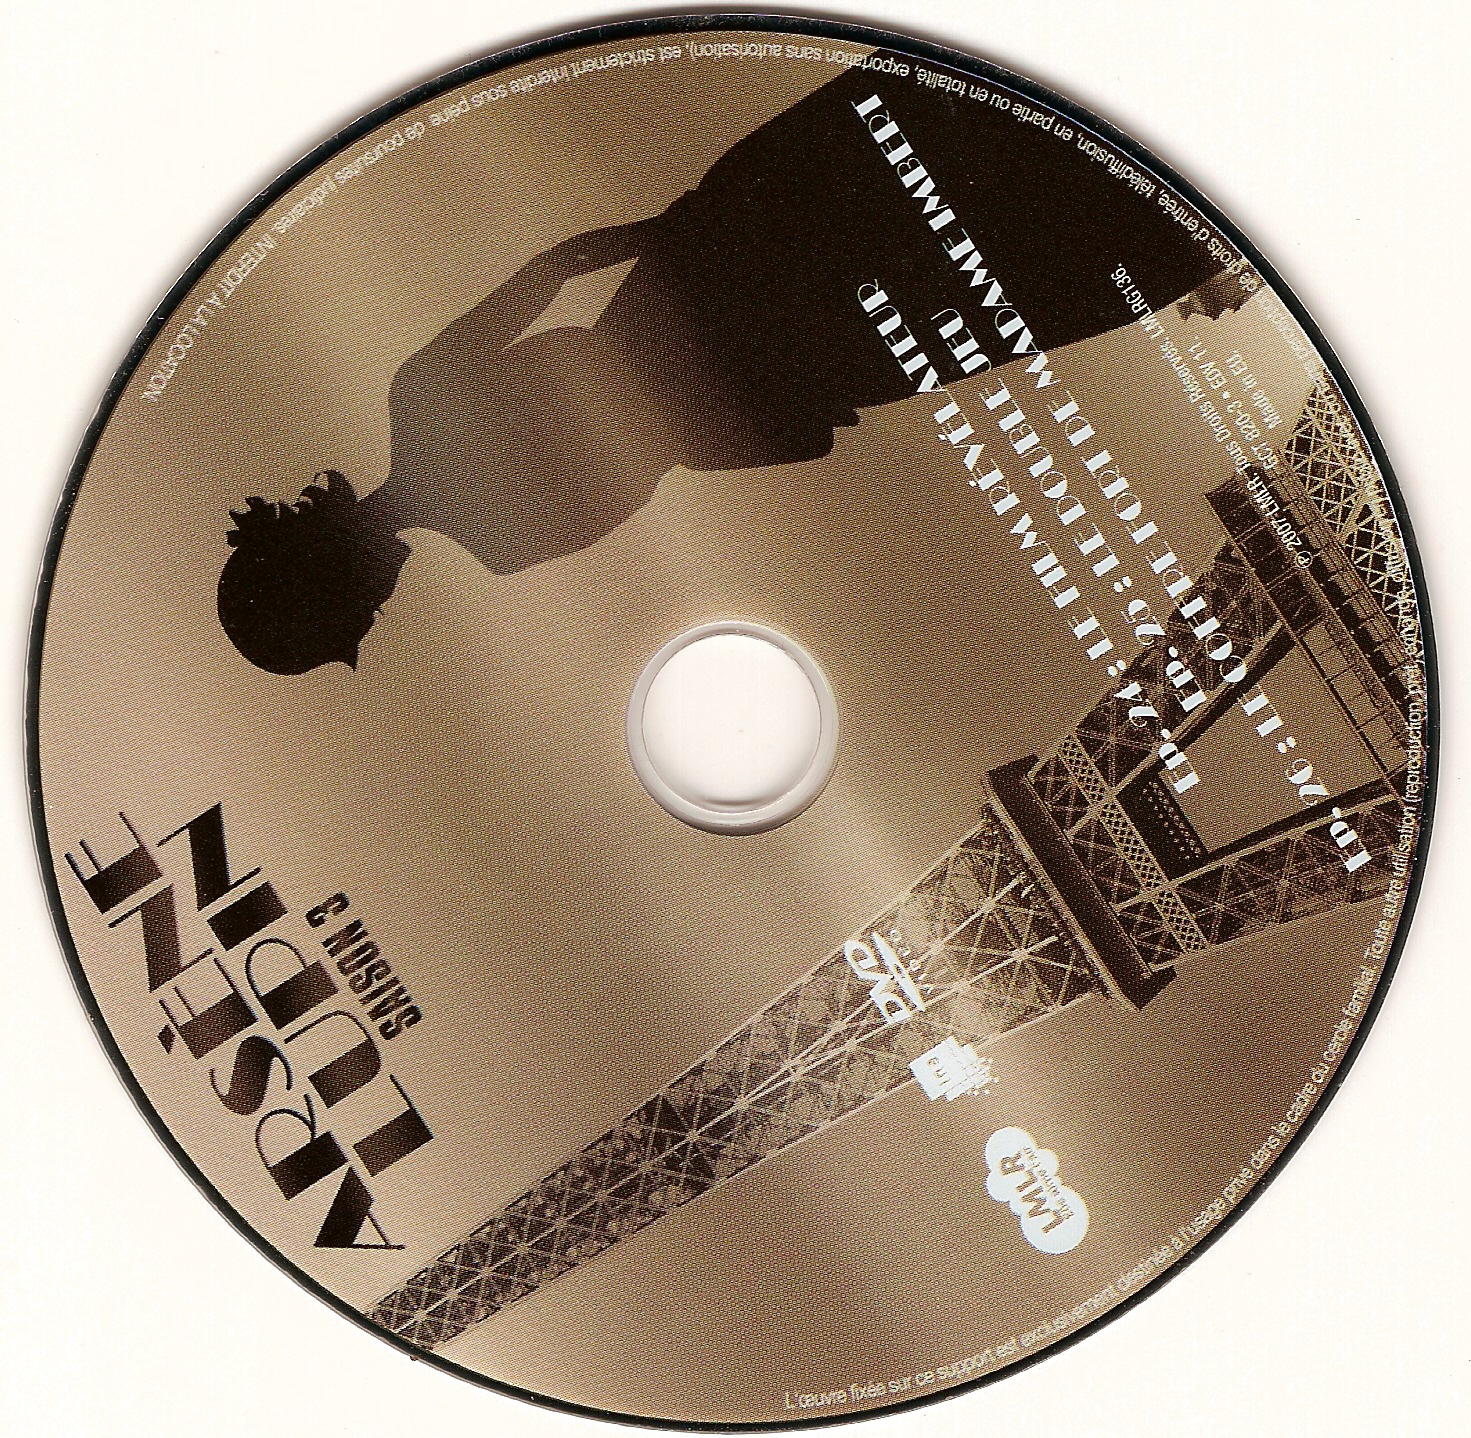 Arsene Lupin Saison 3 DISC 3